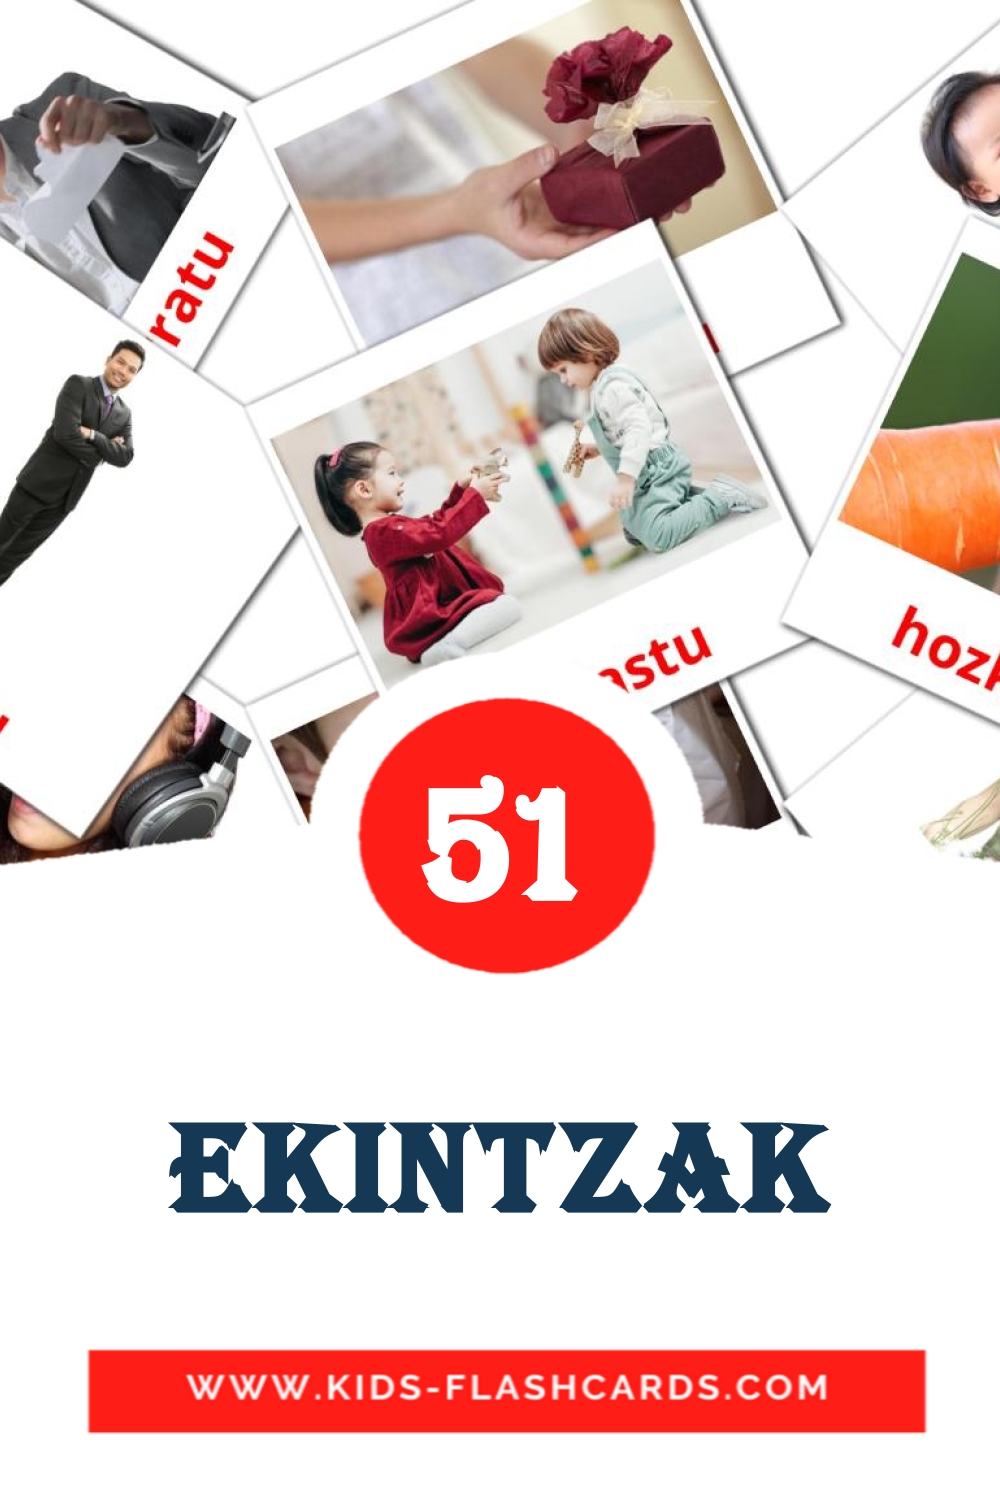 51 tarjetas didacticas de Ekintzak para el jardín de infancia en euskera